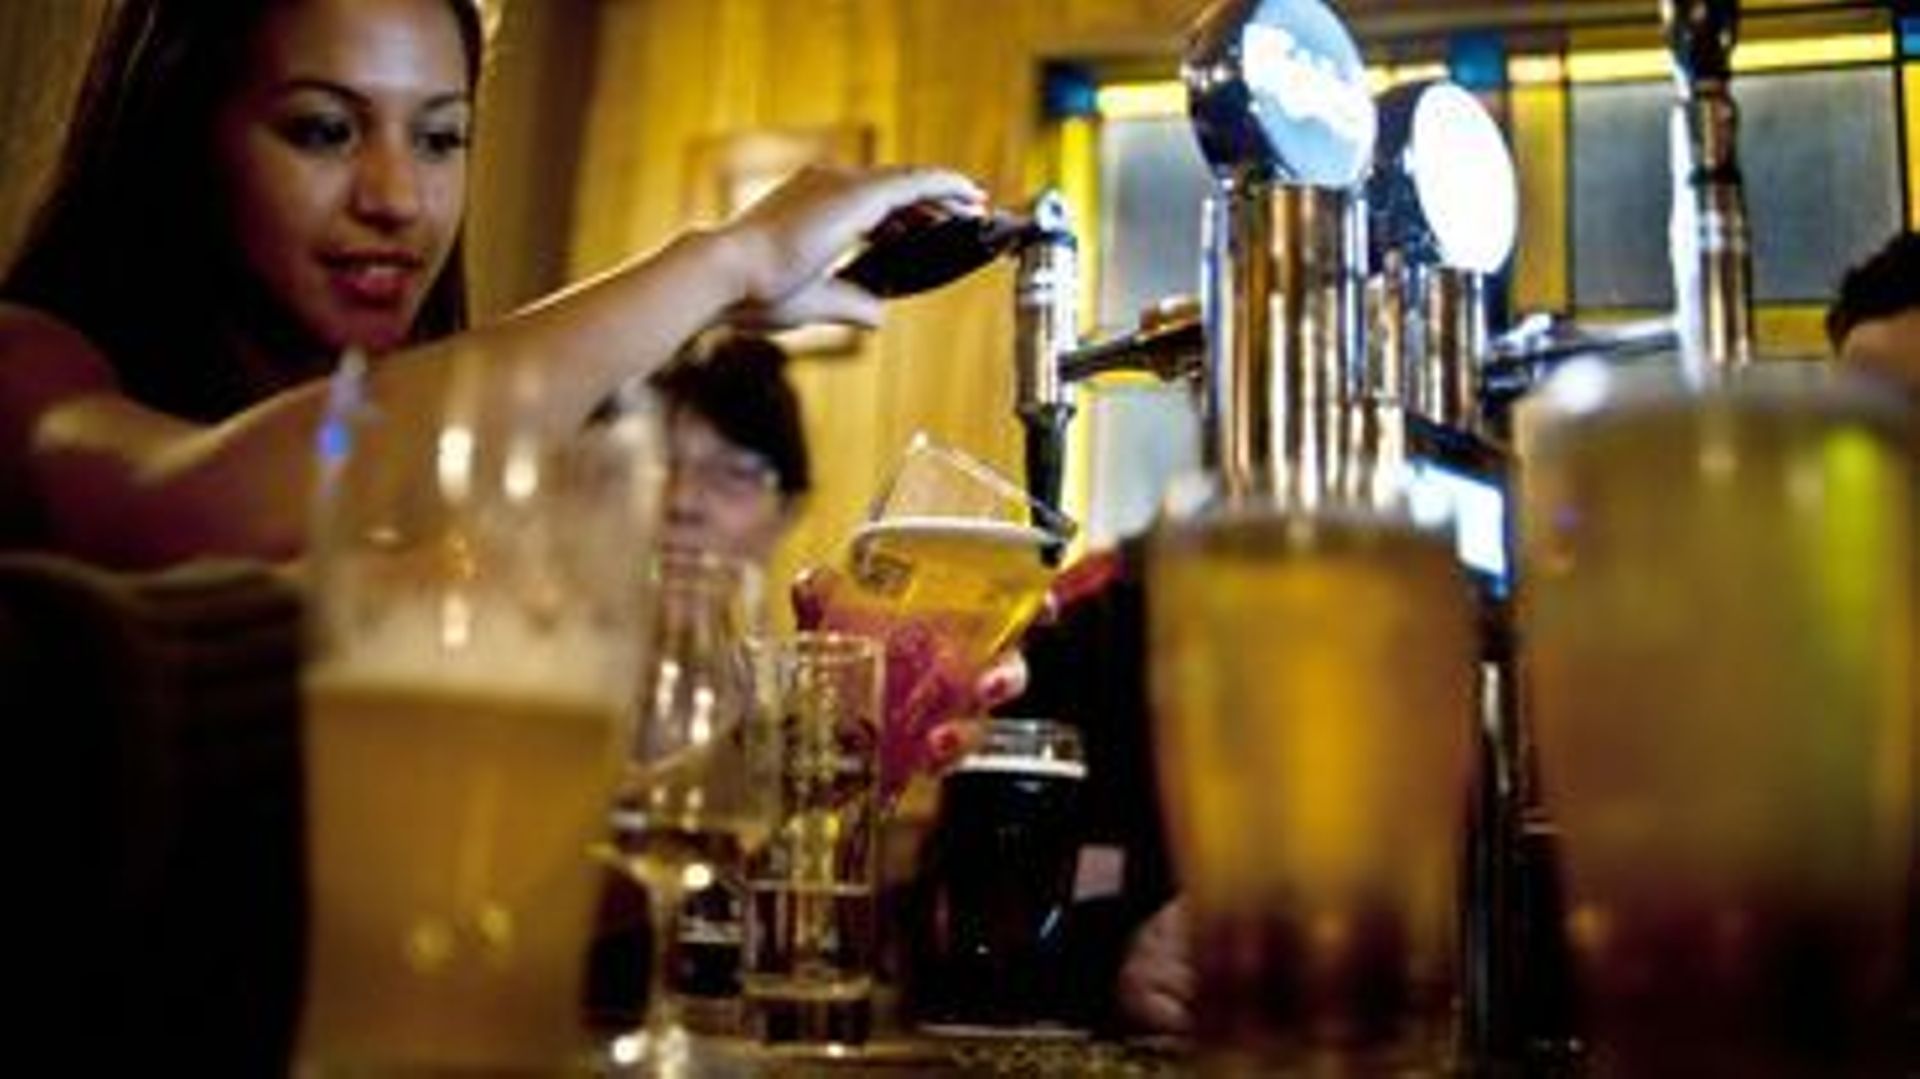 Deux fois plus d'amendes pour vente d'alcool aux mineurs en 2017